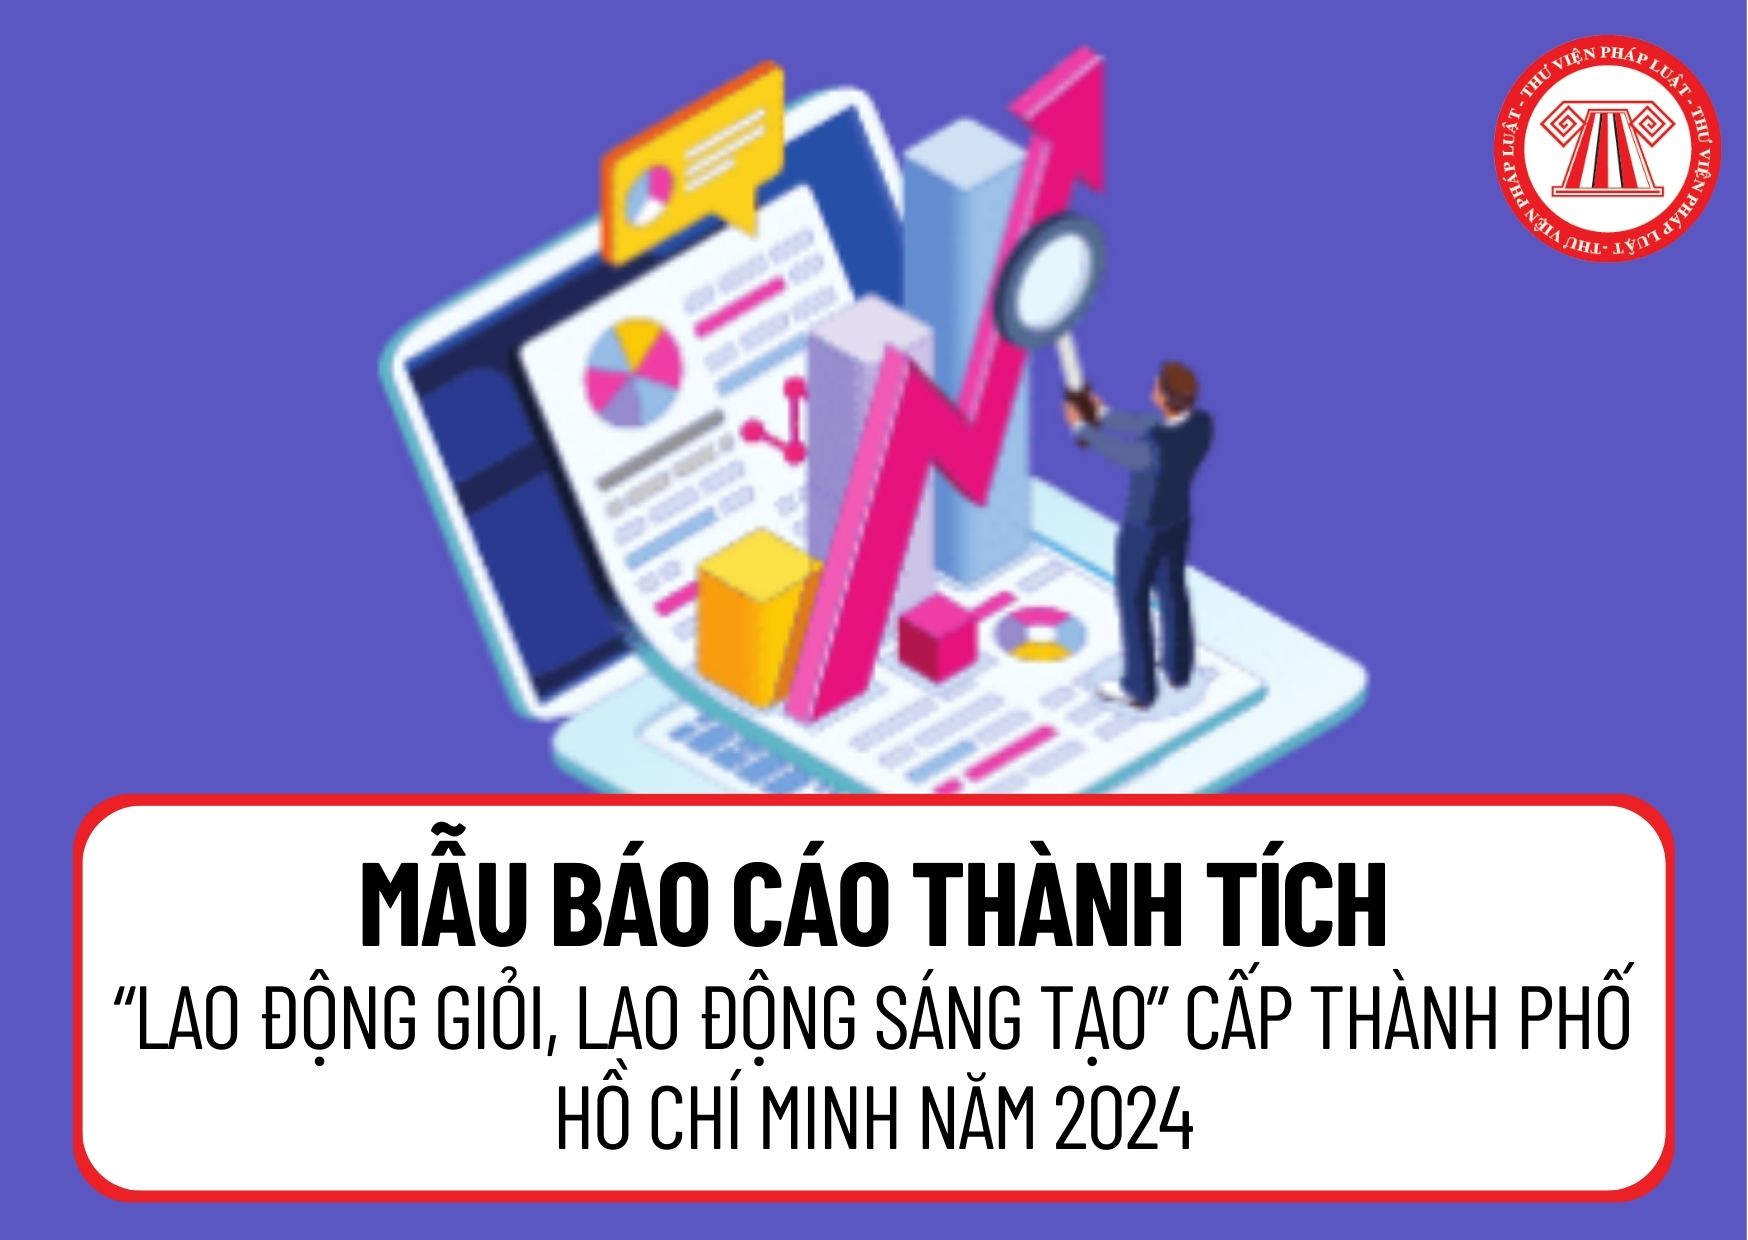 Mẫu báo cáo thành tích trong phong trào thi đua “Lao động giỏi, Lao động sáng tạo” cấp Thành phố Hồ Chí Minh năm 2024 gồm nội dung gì?